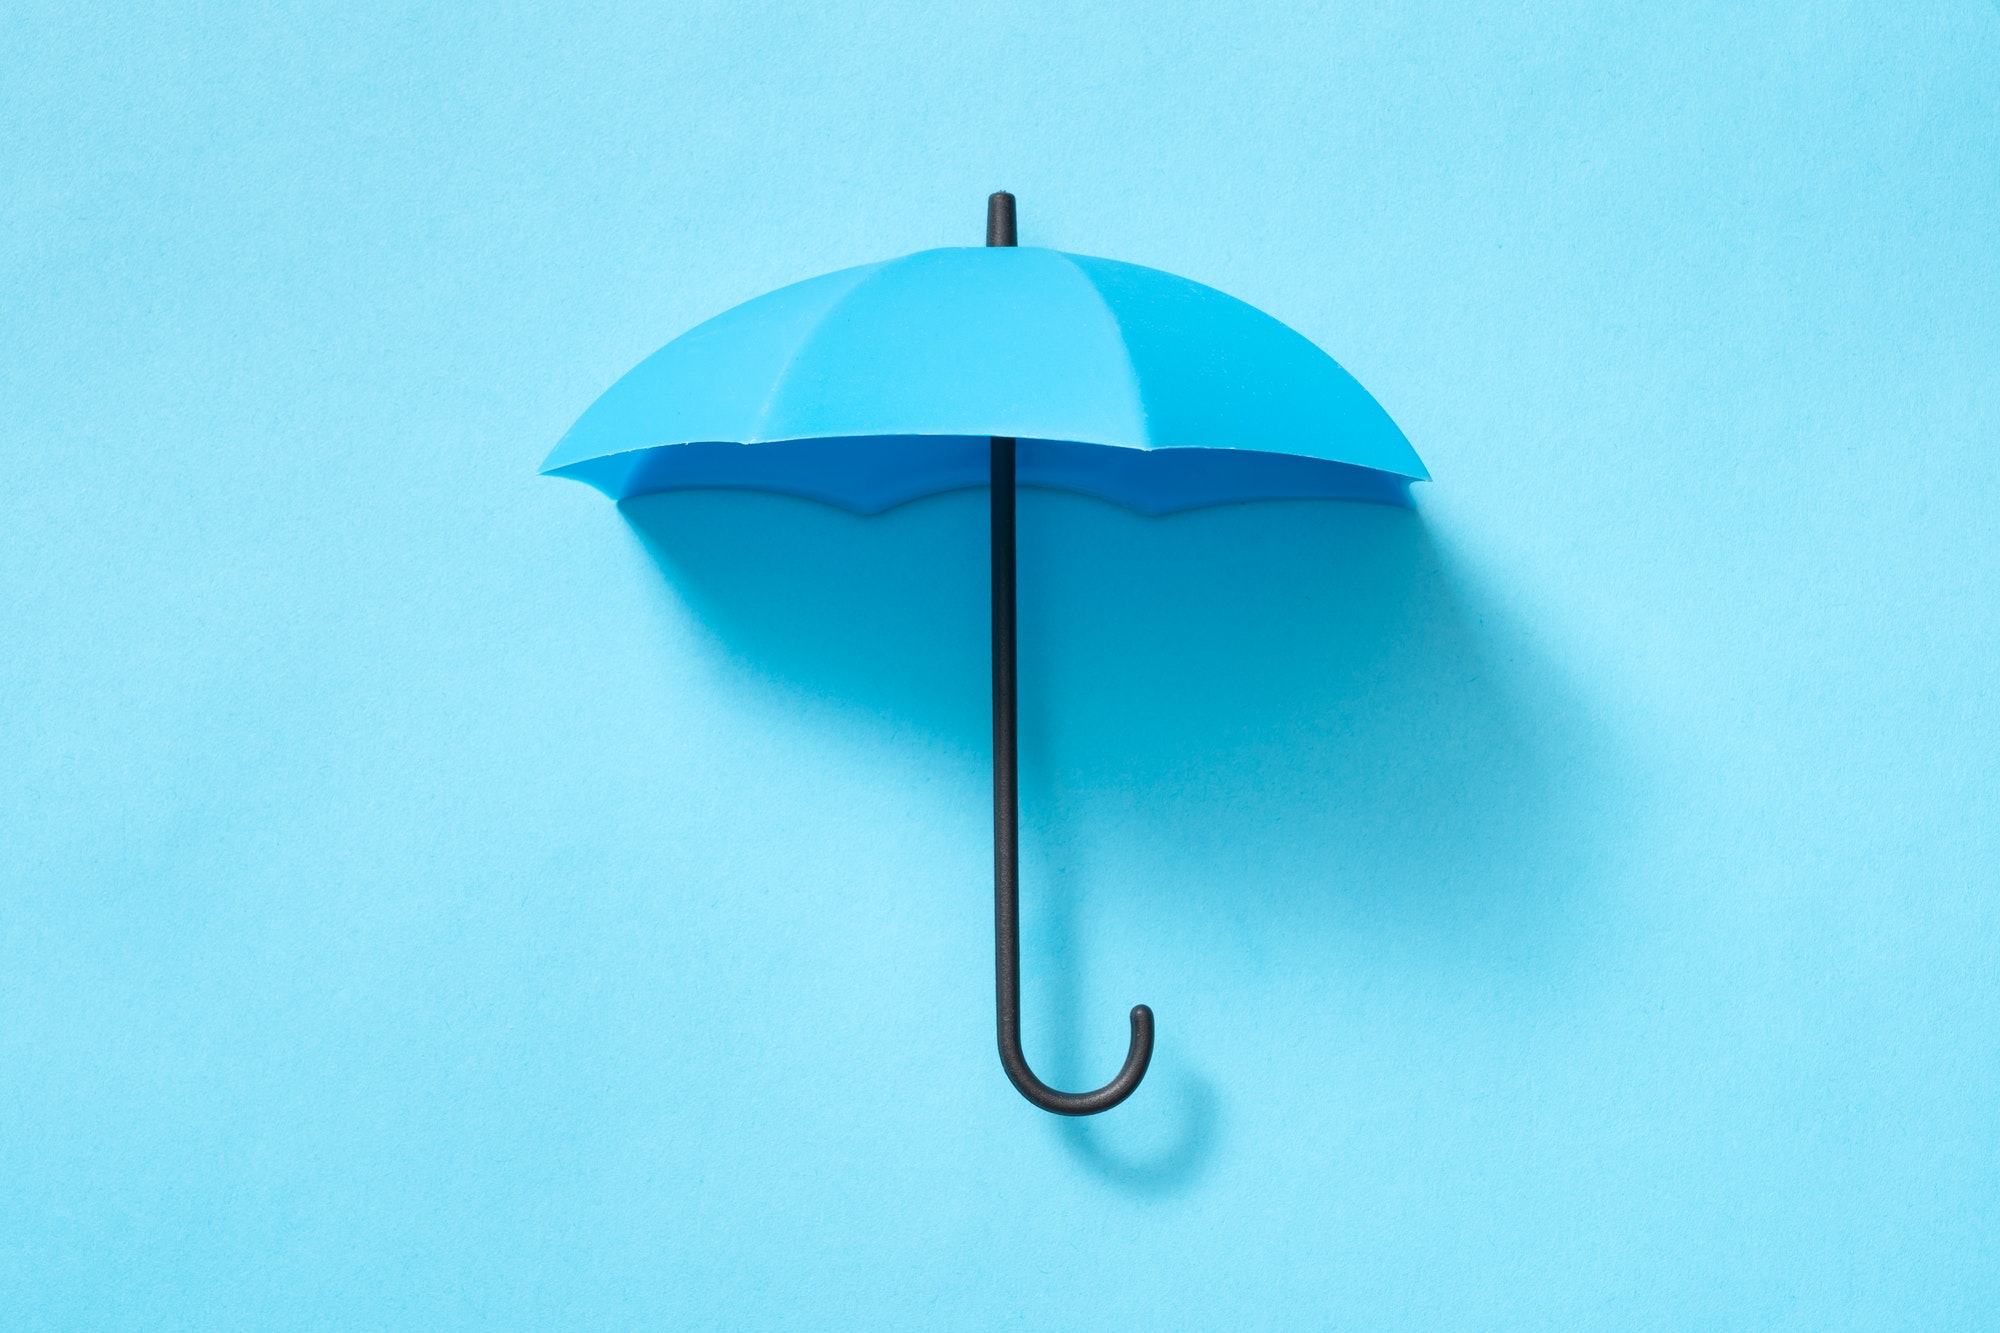 Blue umbrella isolated on blue background